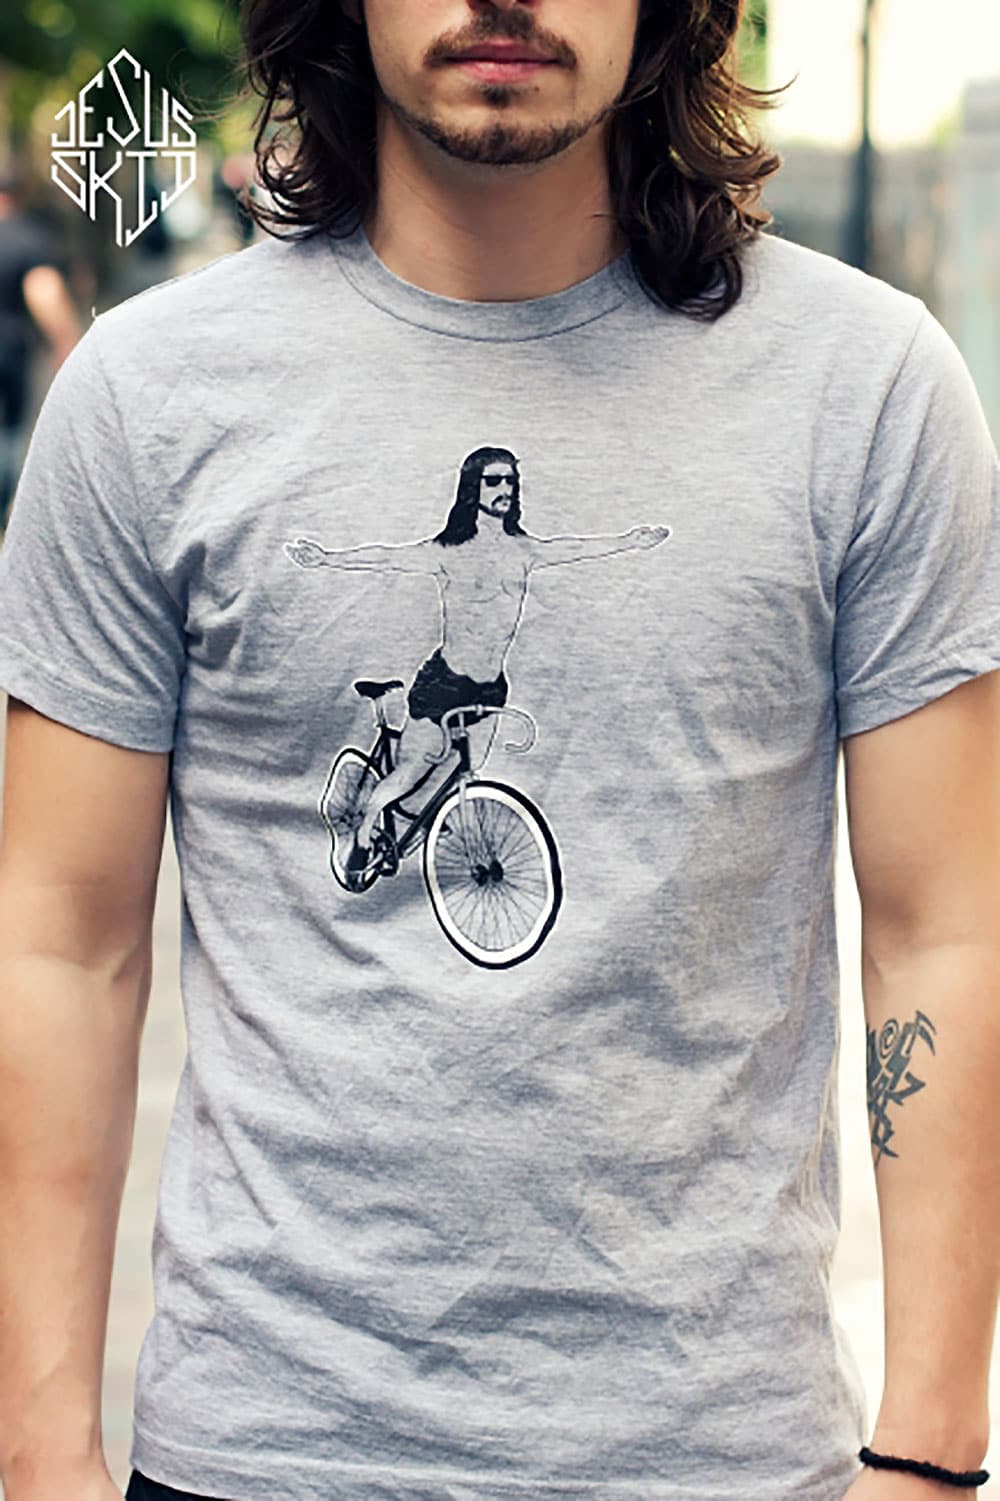 Connaissez vous le t-shirt Jésus Skid ?